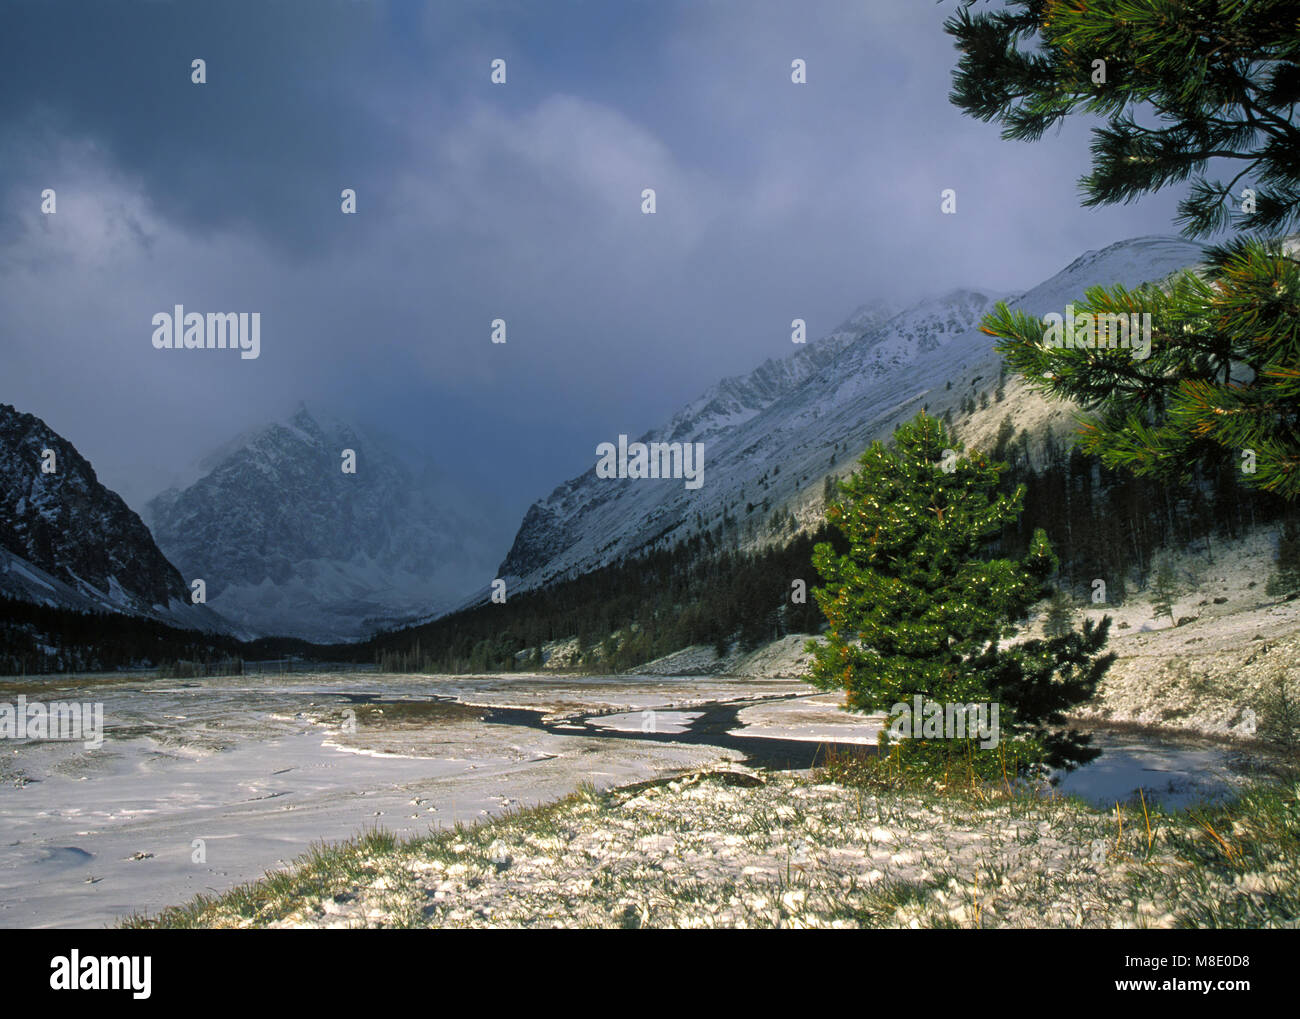 Aktru valley au printemps, les montagnes de l'Altaï, la neige, les nuages Banque D'Images